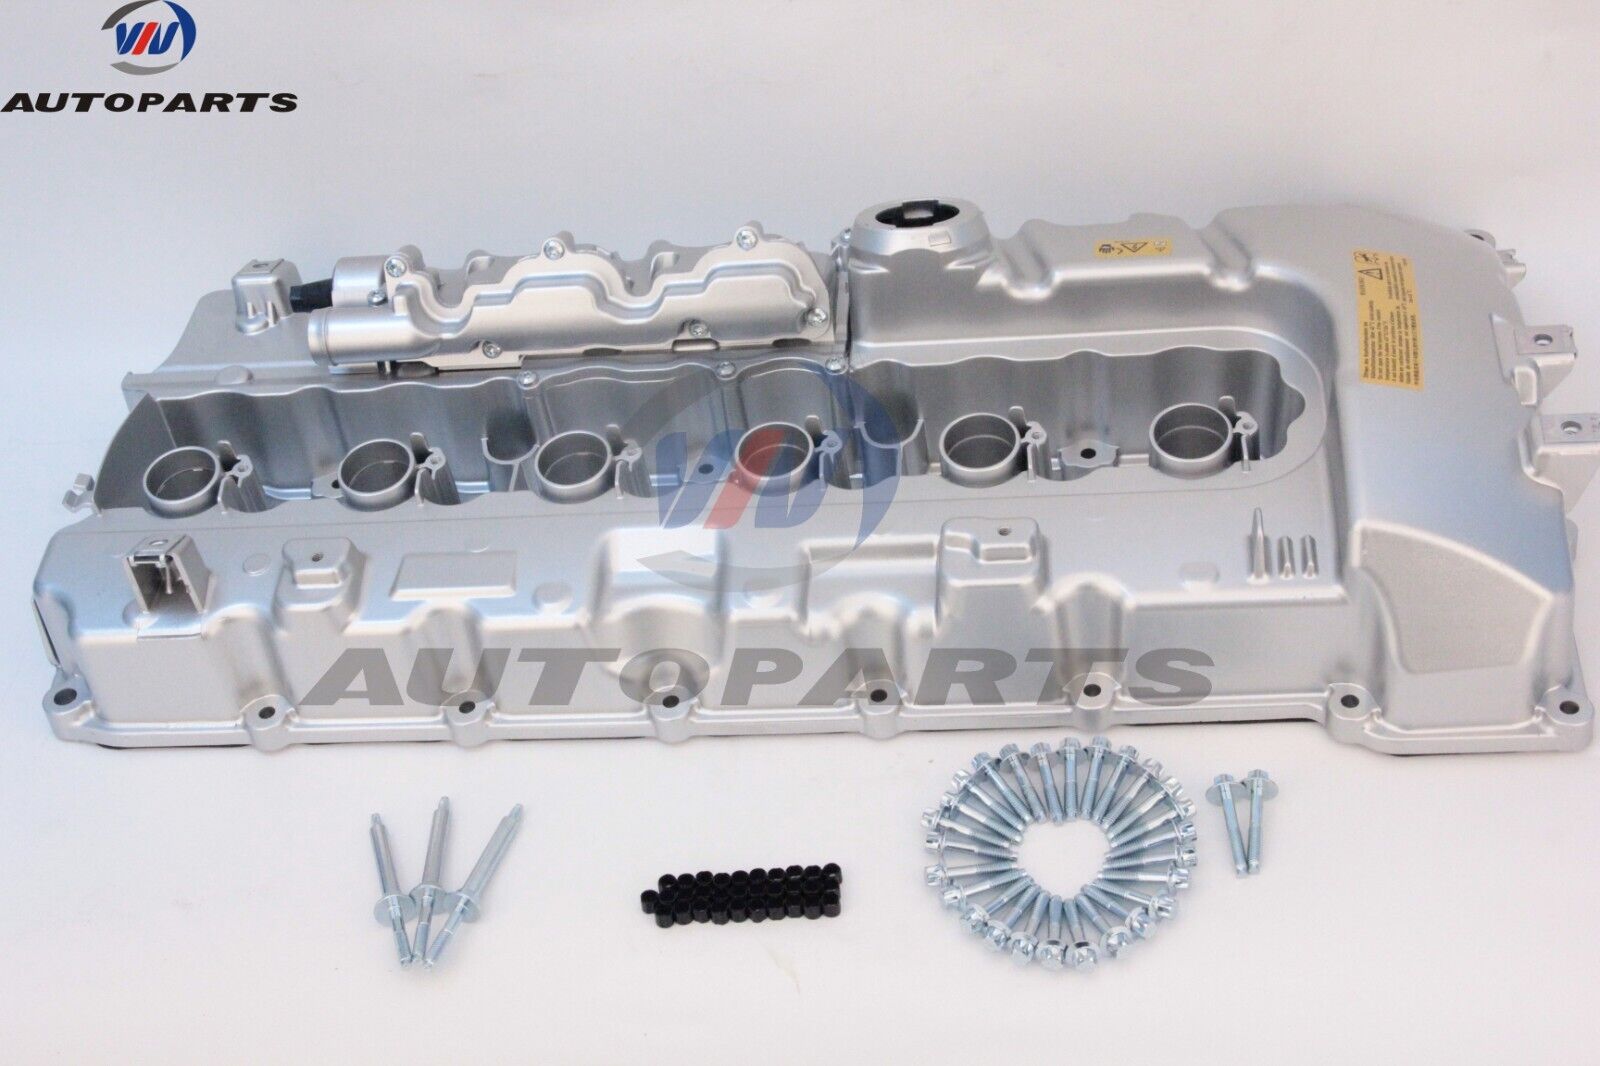 Aluminum Engine Valve Cover w/Gasket for BMW 1M 135i Z4 335i 535i 740i  F02 N54